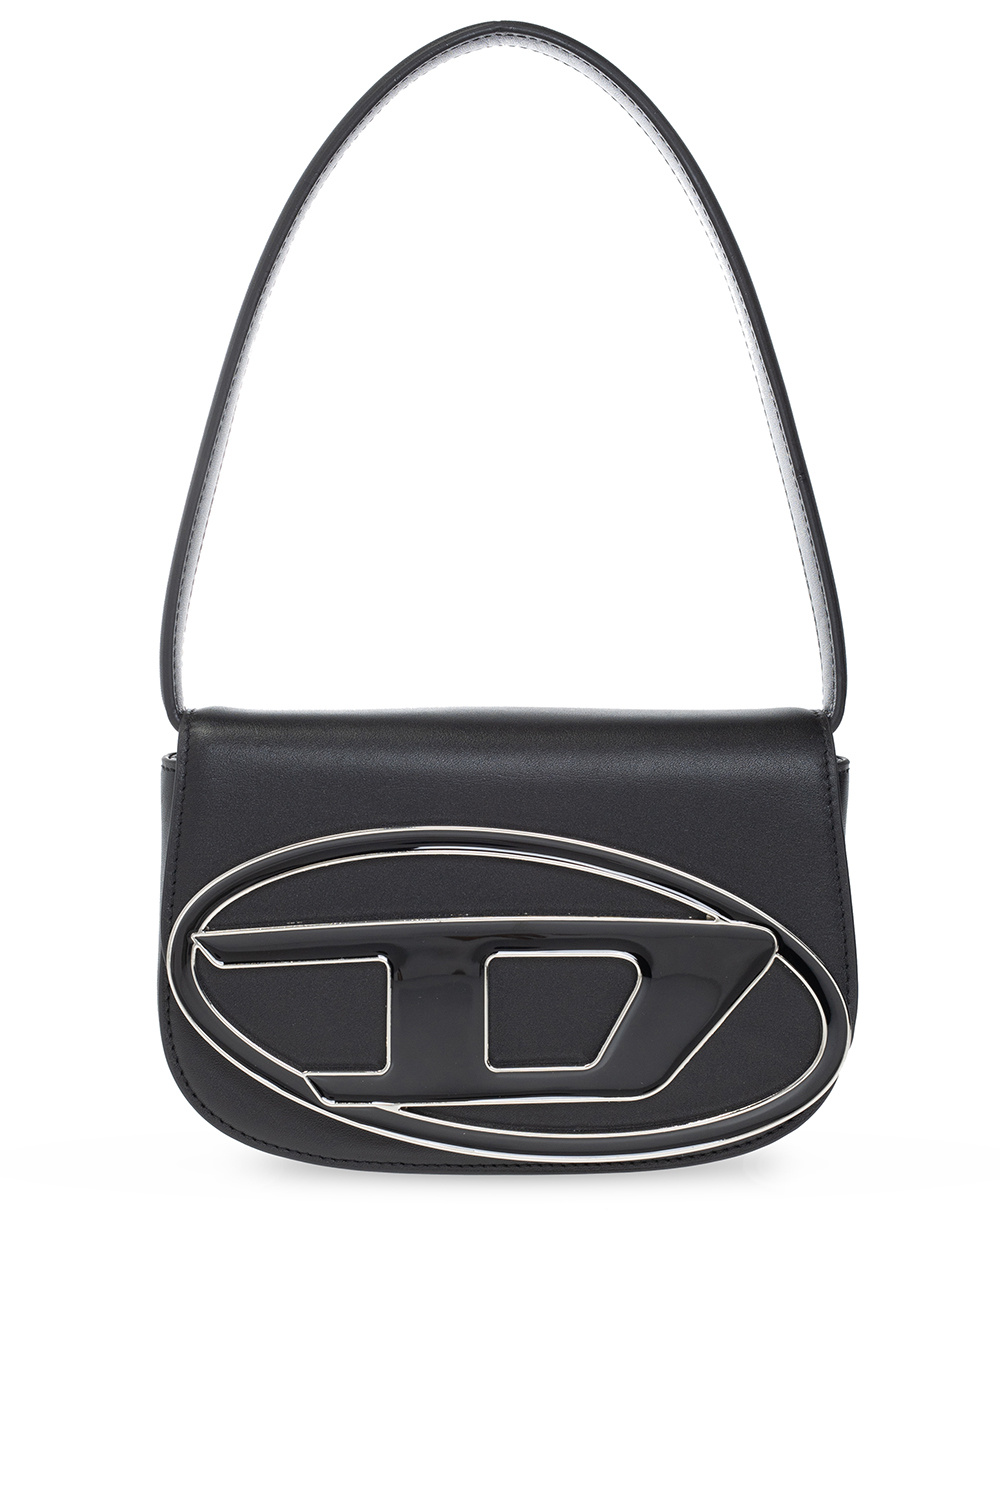 Black '1DR' shoulder bag Diesel - Vitkac HK